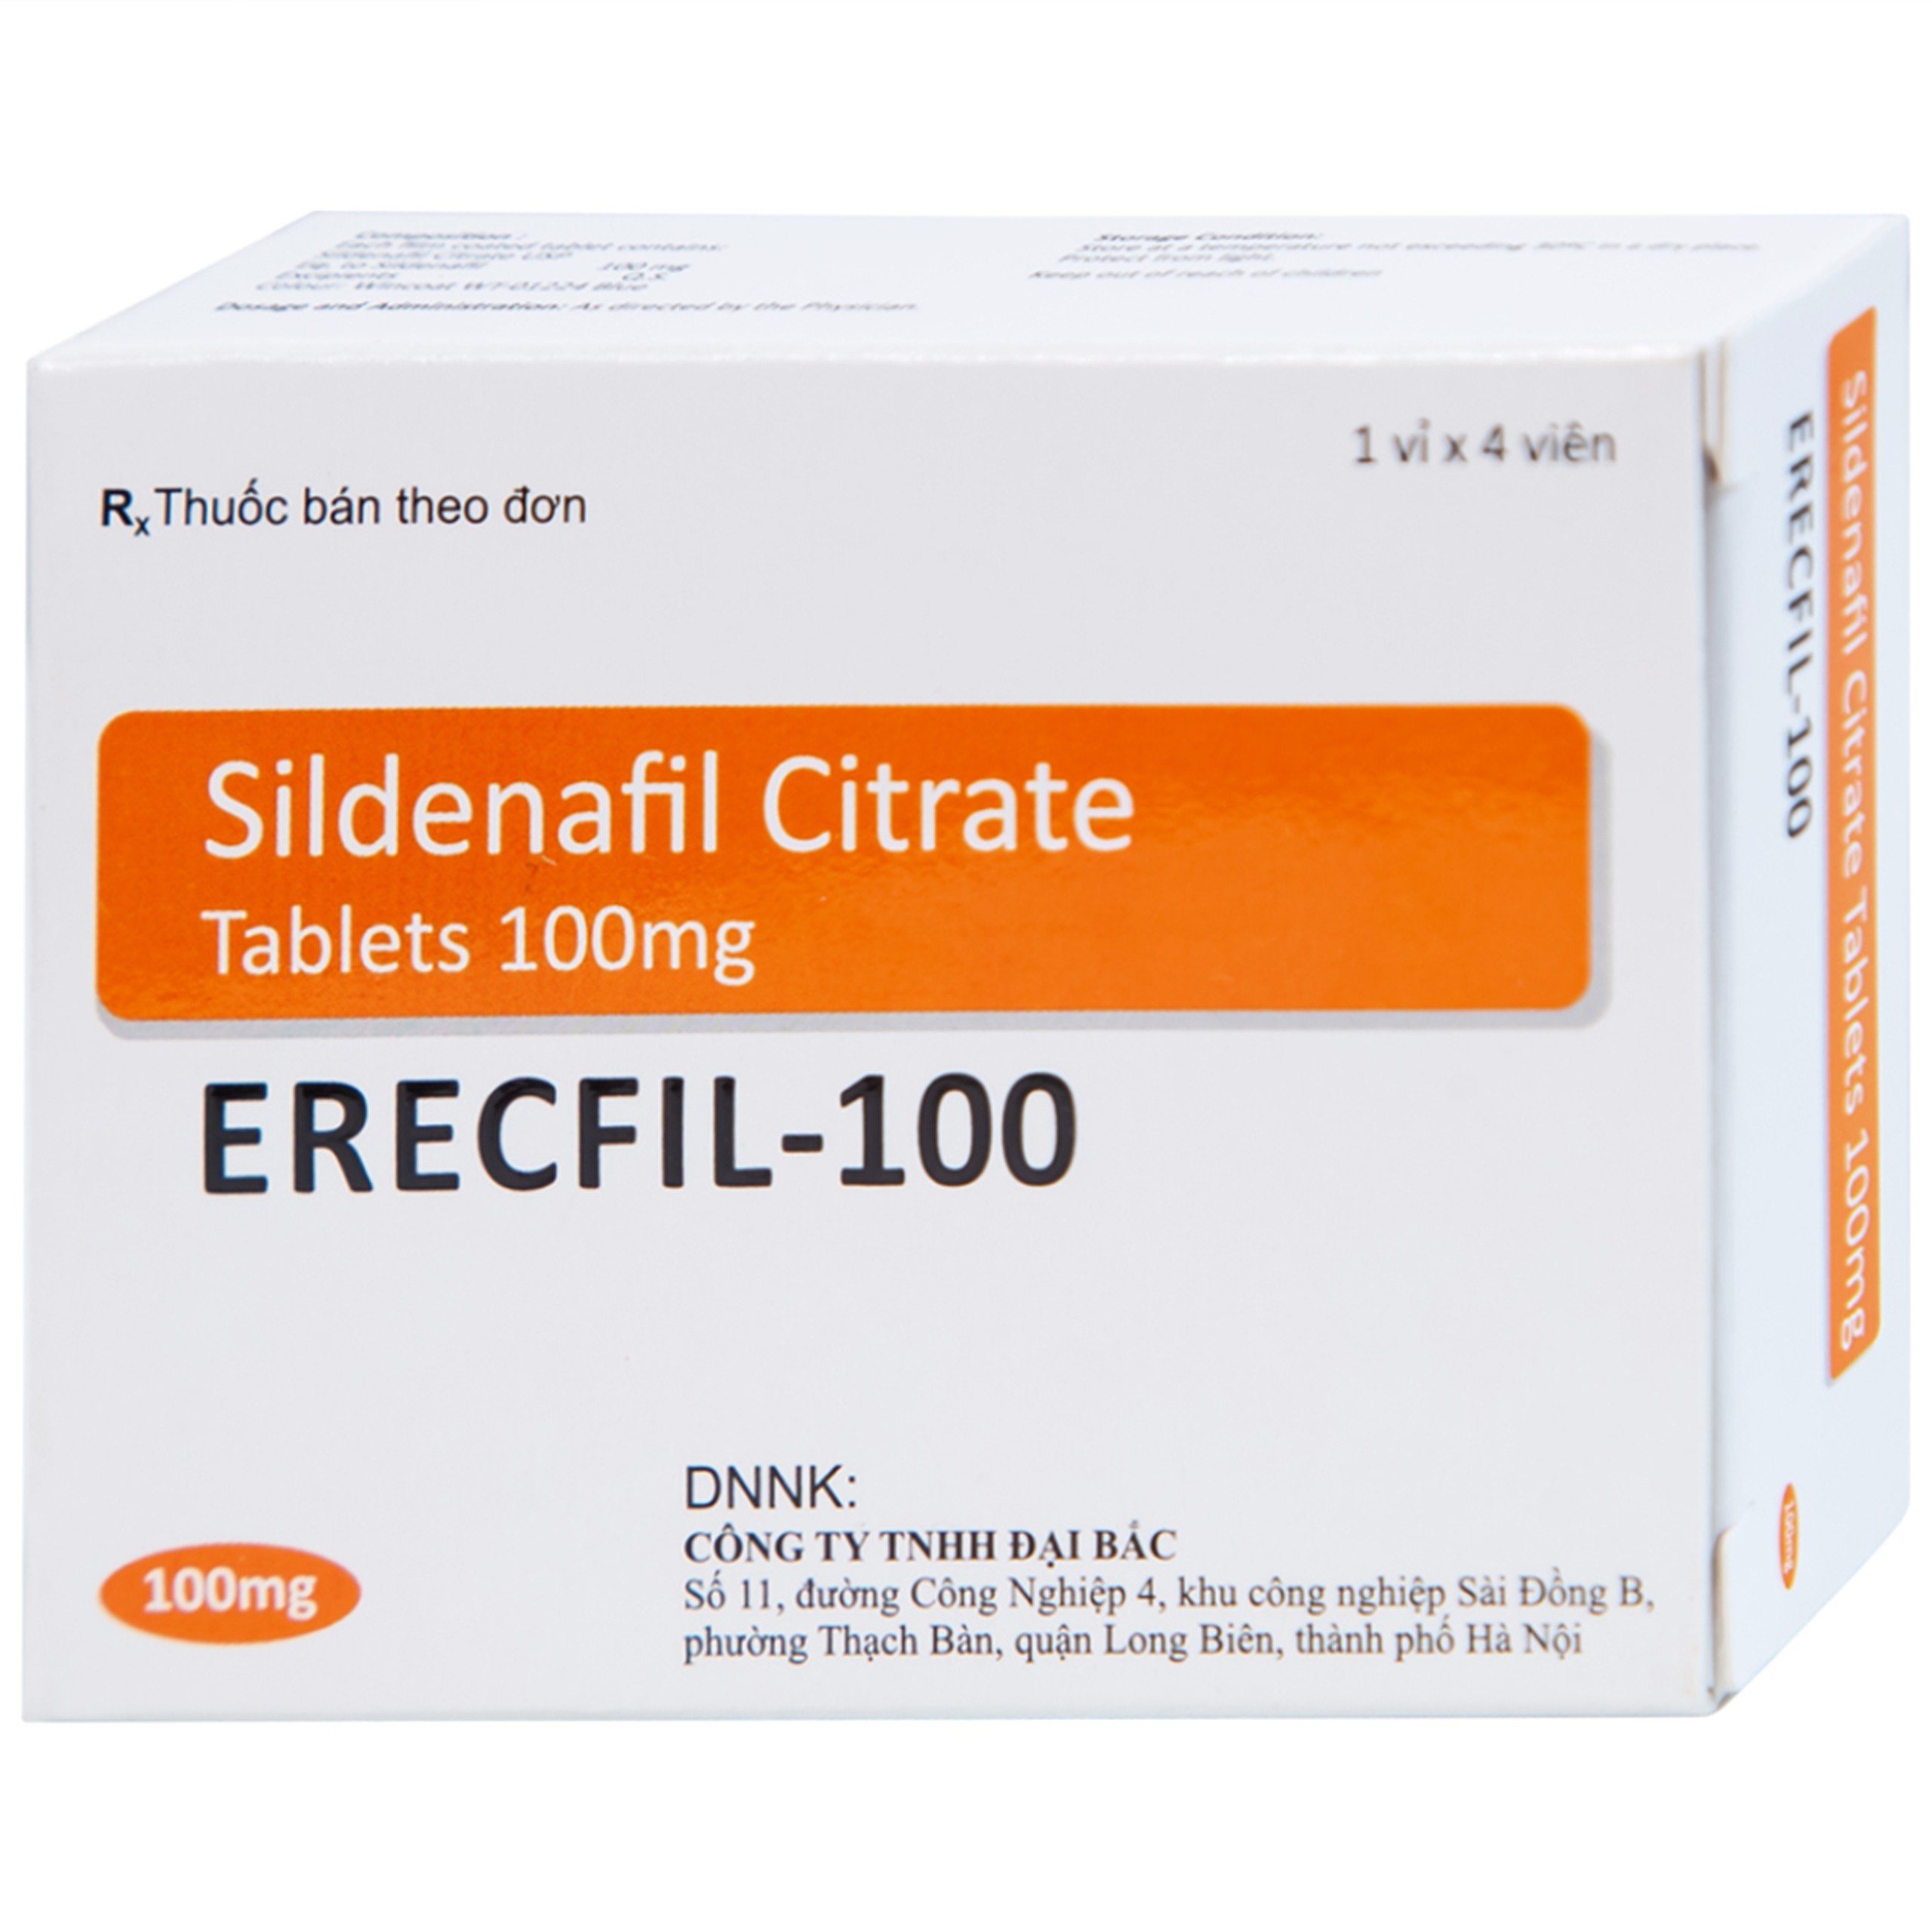 Thuốc Erecfil-100 Sildenafil Citrate điều trị rối loạn cương dương (1 vỉ x 4 viên)